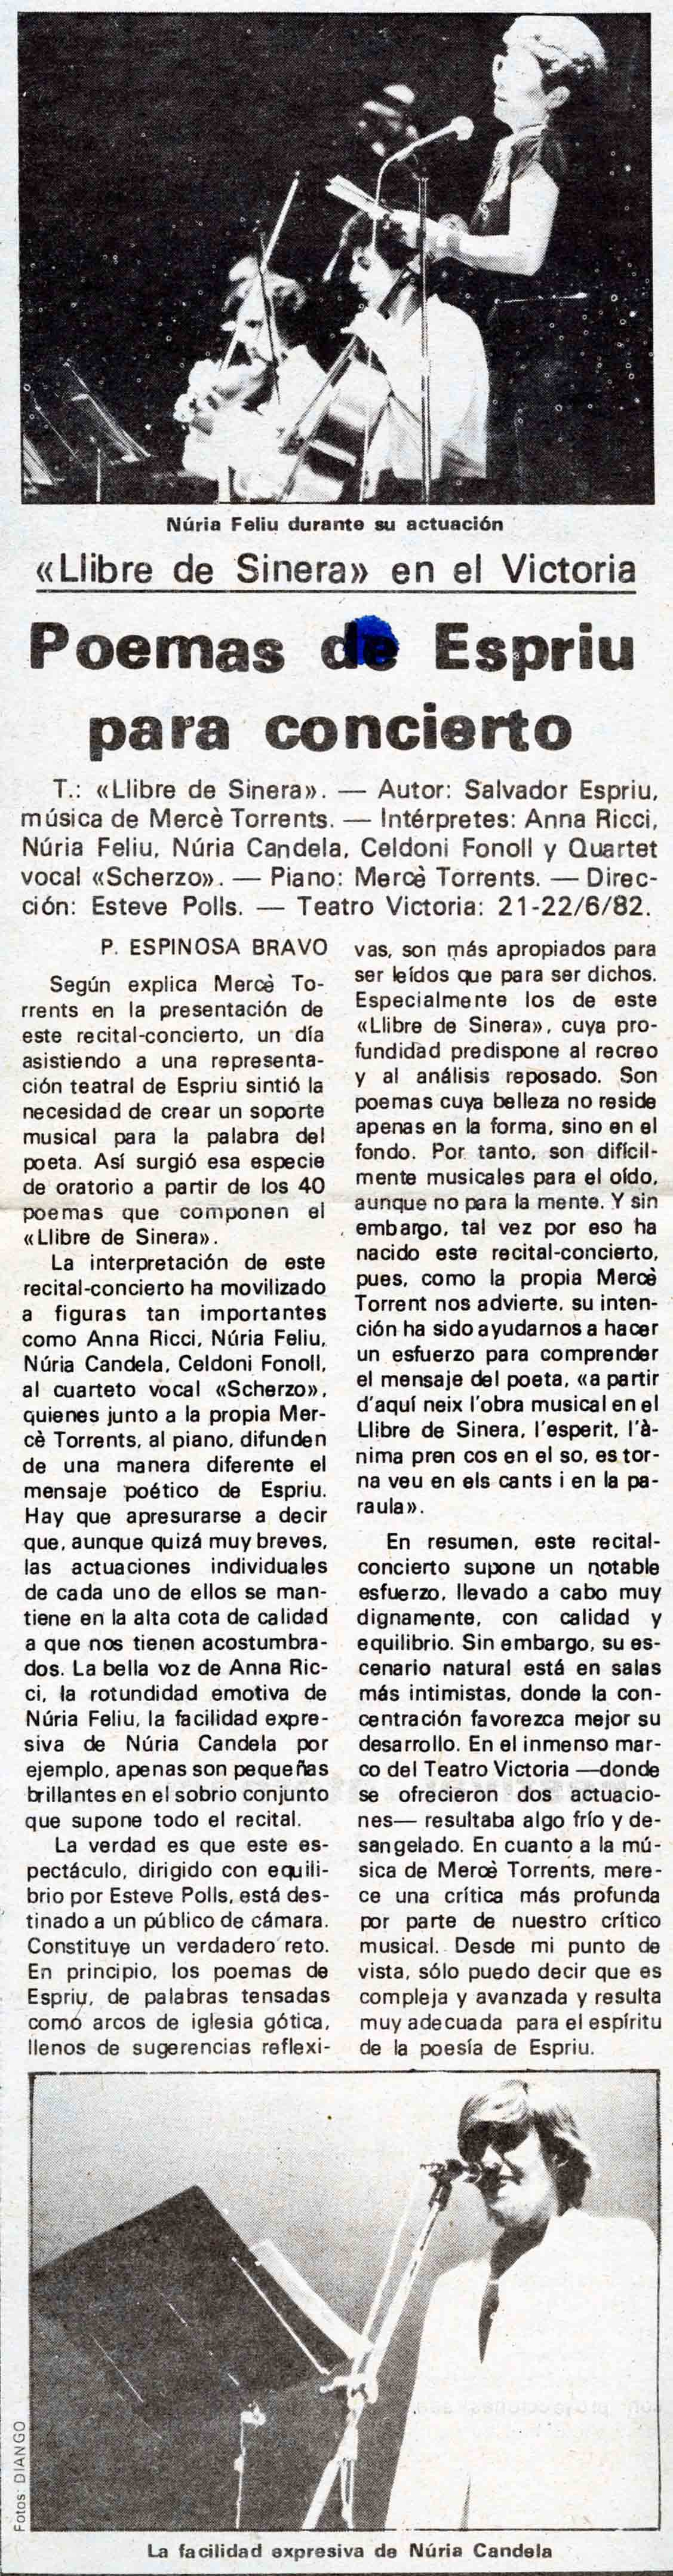 Espinosa Bravo, P. Poemsa de Espriu para concierto, 25/06/1982